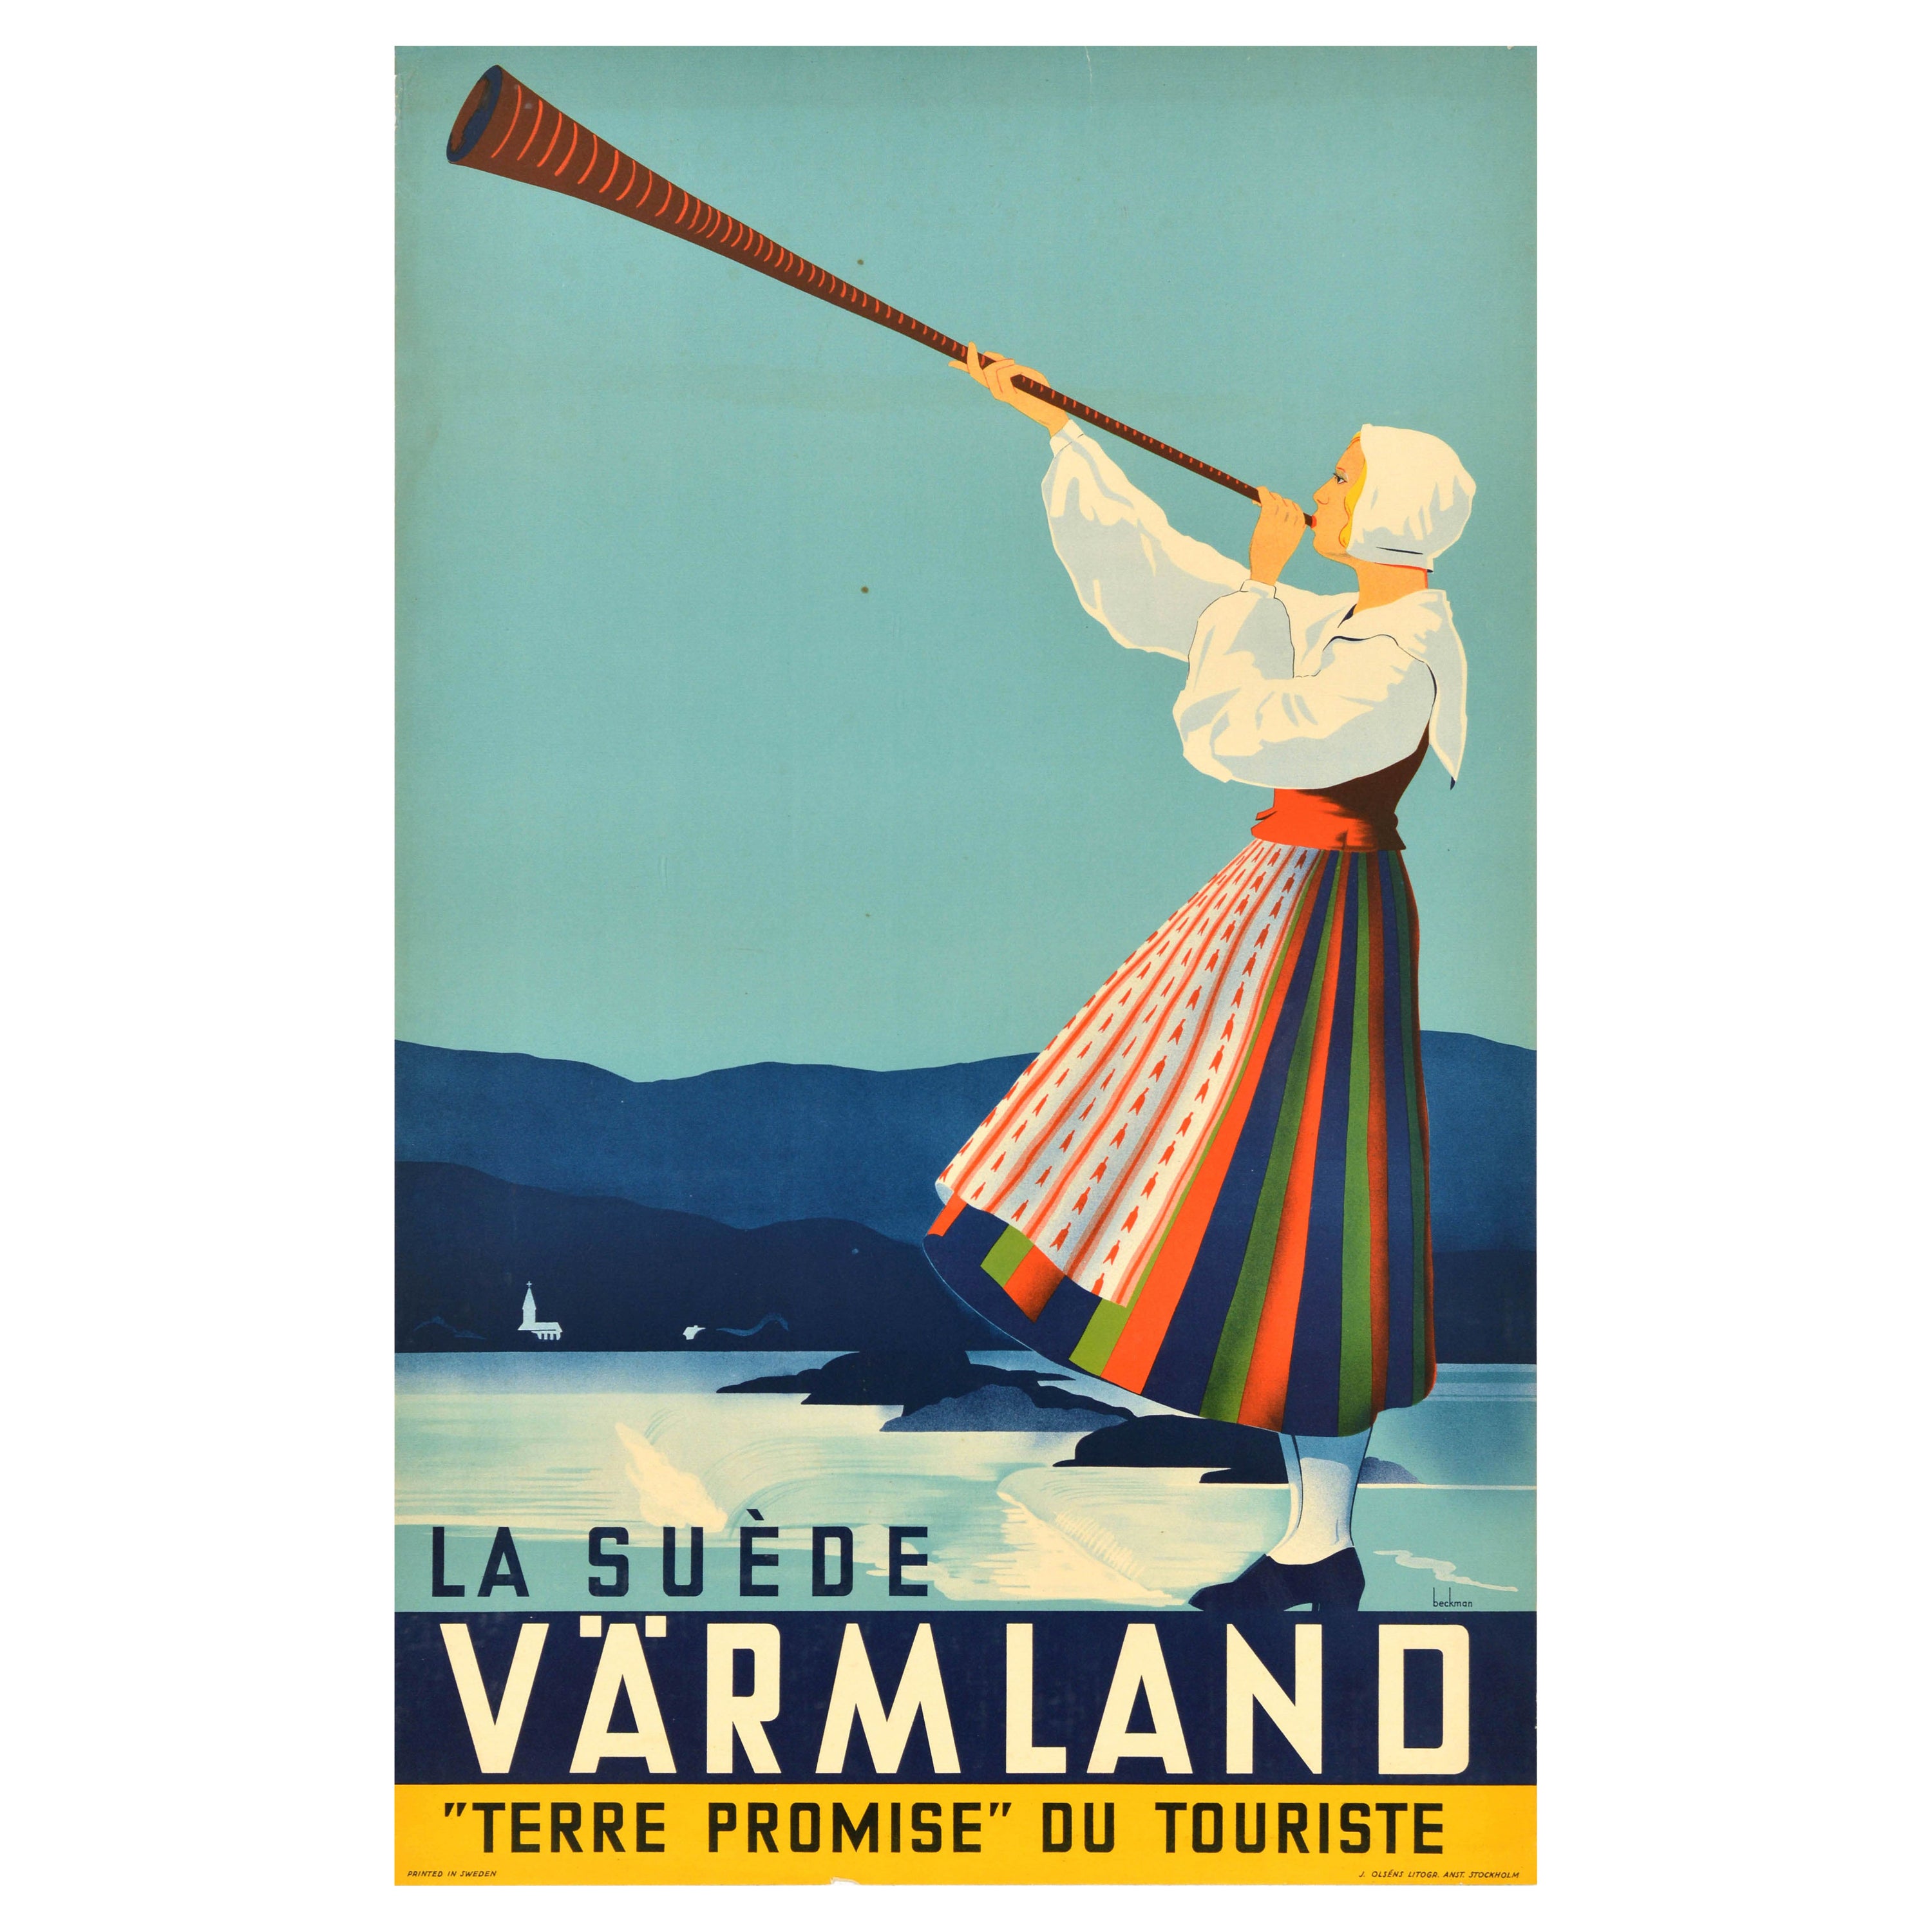 Original Vintage Travel Advertising Poster Varmland Promised Land Sweden Sverige